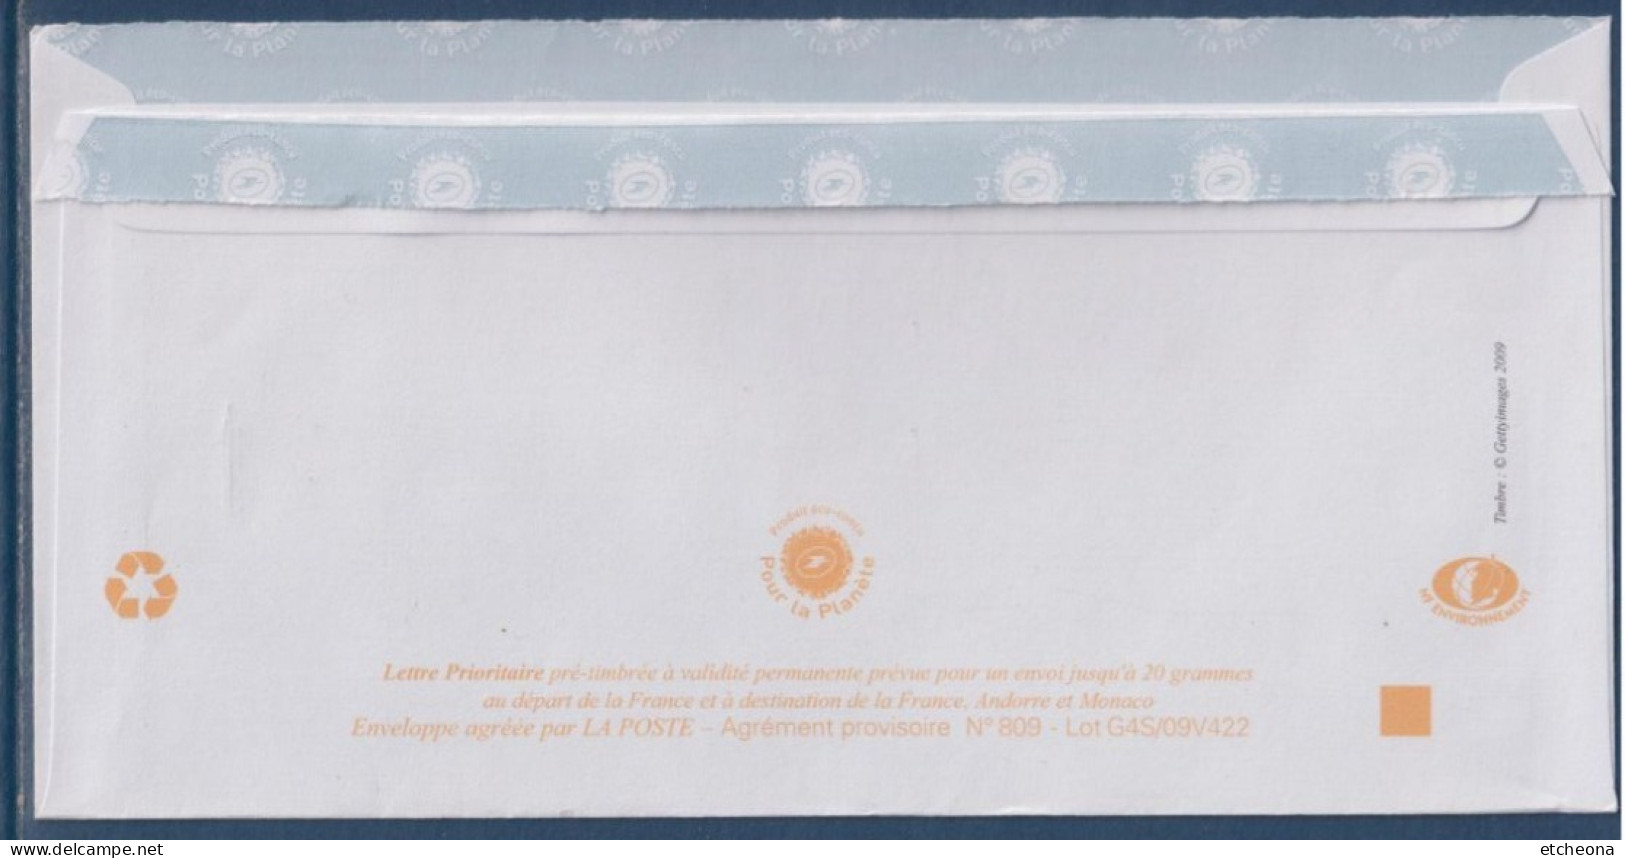 Enveloppe Prêt à Poster IDtimbre Cadre Légende Philaposte Arbre Oblitération 02.12.10 - Prêts-à-poster:  Autres (1995-...)